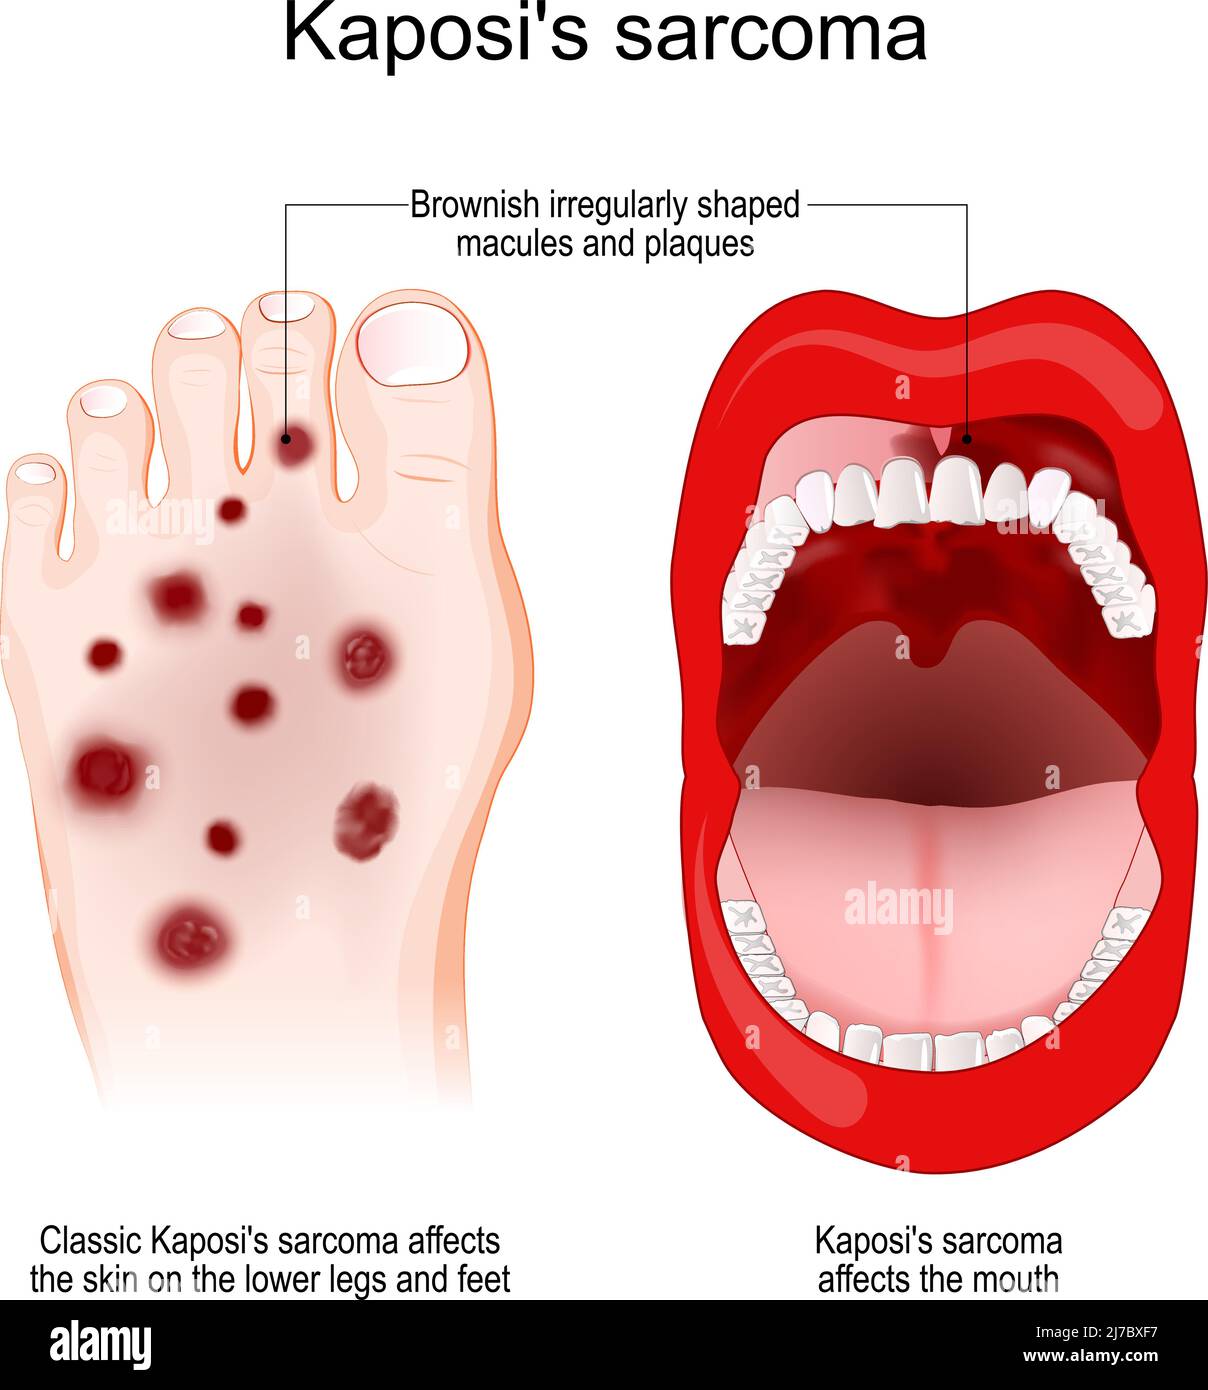 El sarcoma de Kaposi es un tipo raro de cáncer causado por una infección por el herpesvirus humano. El sarcoma de Kaposi afecta la boca y el pie. Síntoma de Kaposi Ilustración del Vector